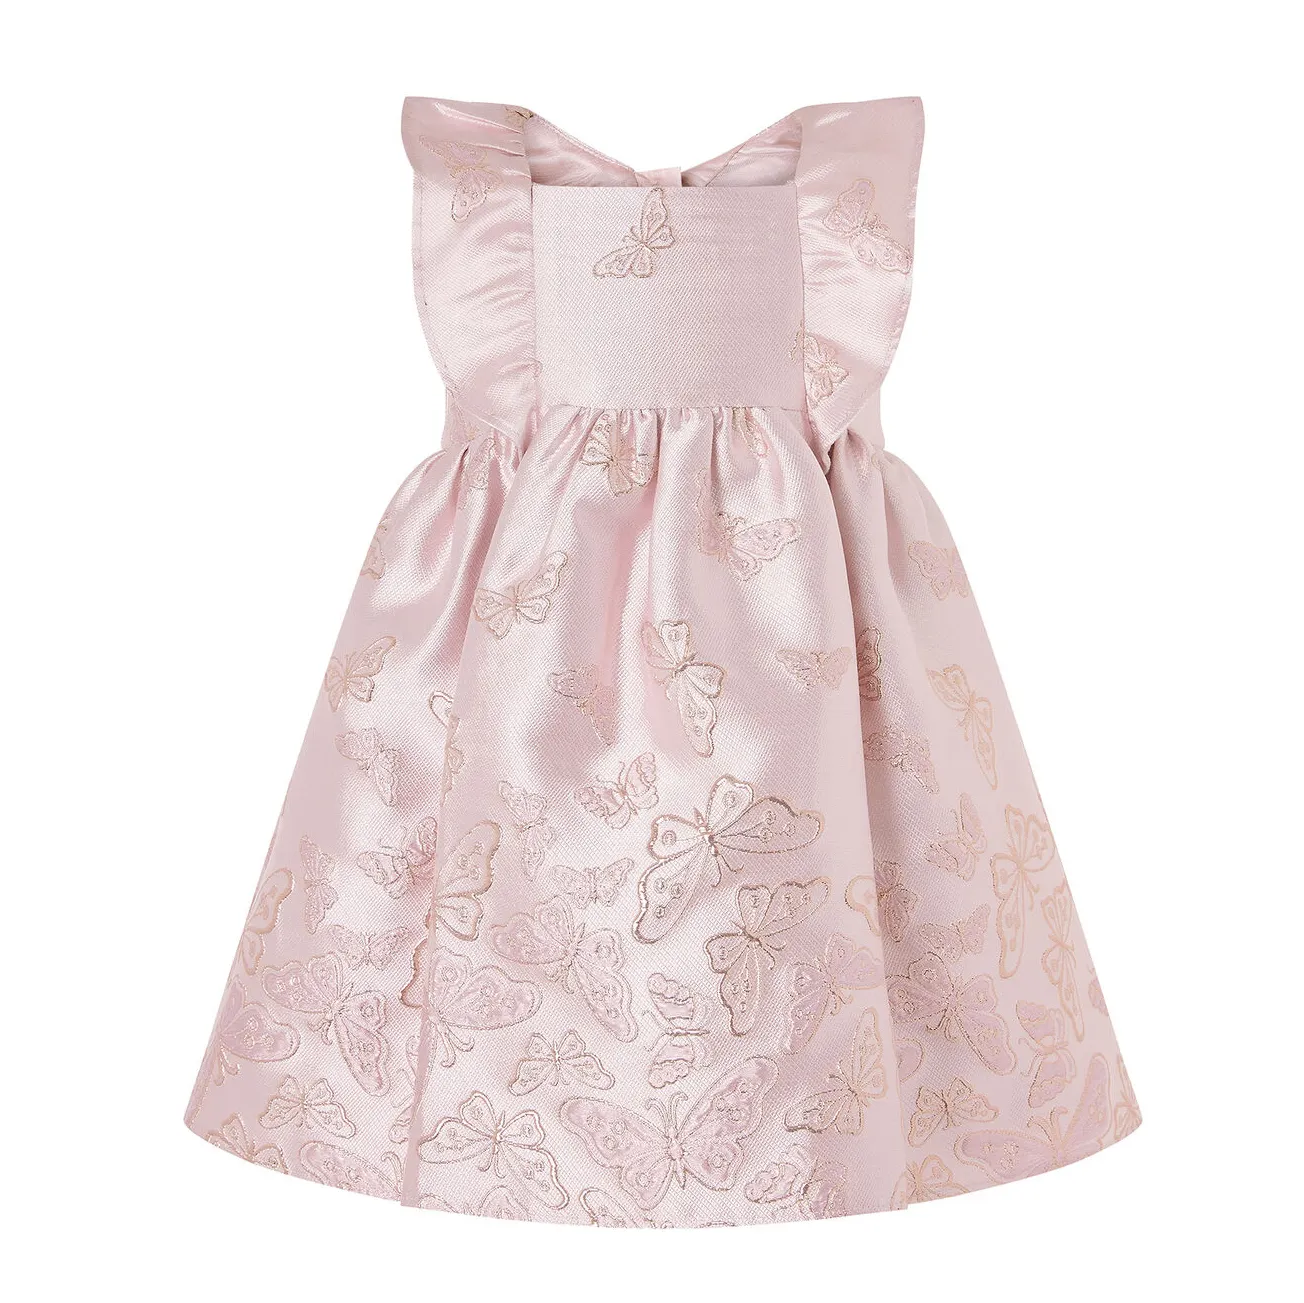 Etiqueta privada padrão borboleta, bebê meninas crianças vestido de festa de aniversário para meninas jacquard vestidos de festa para crianças